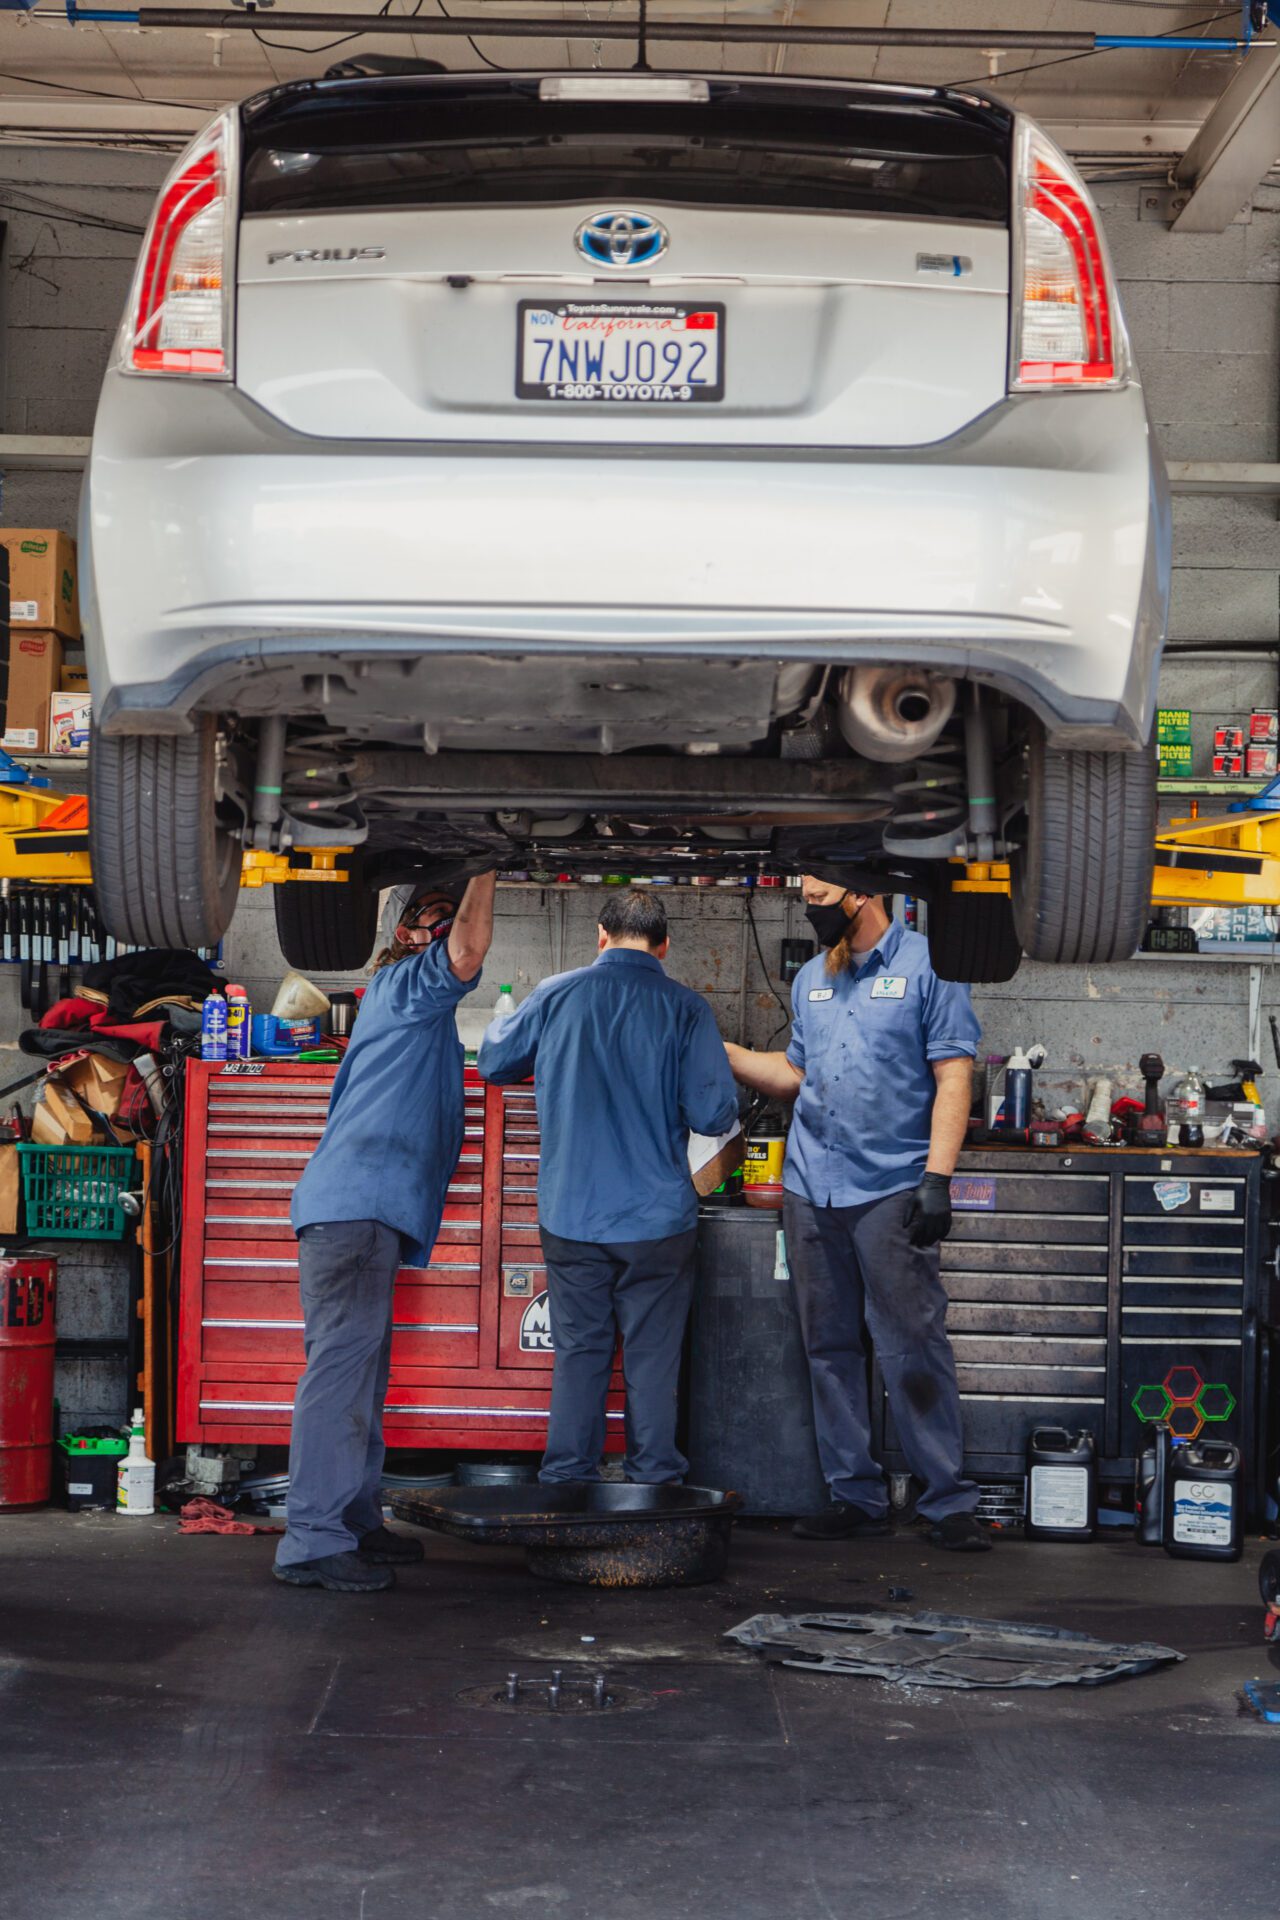 A technician working on auto repairs in Palo Alto, CA